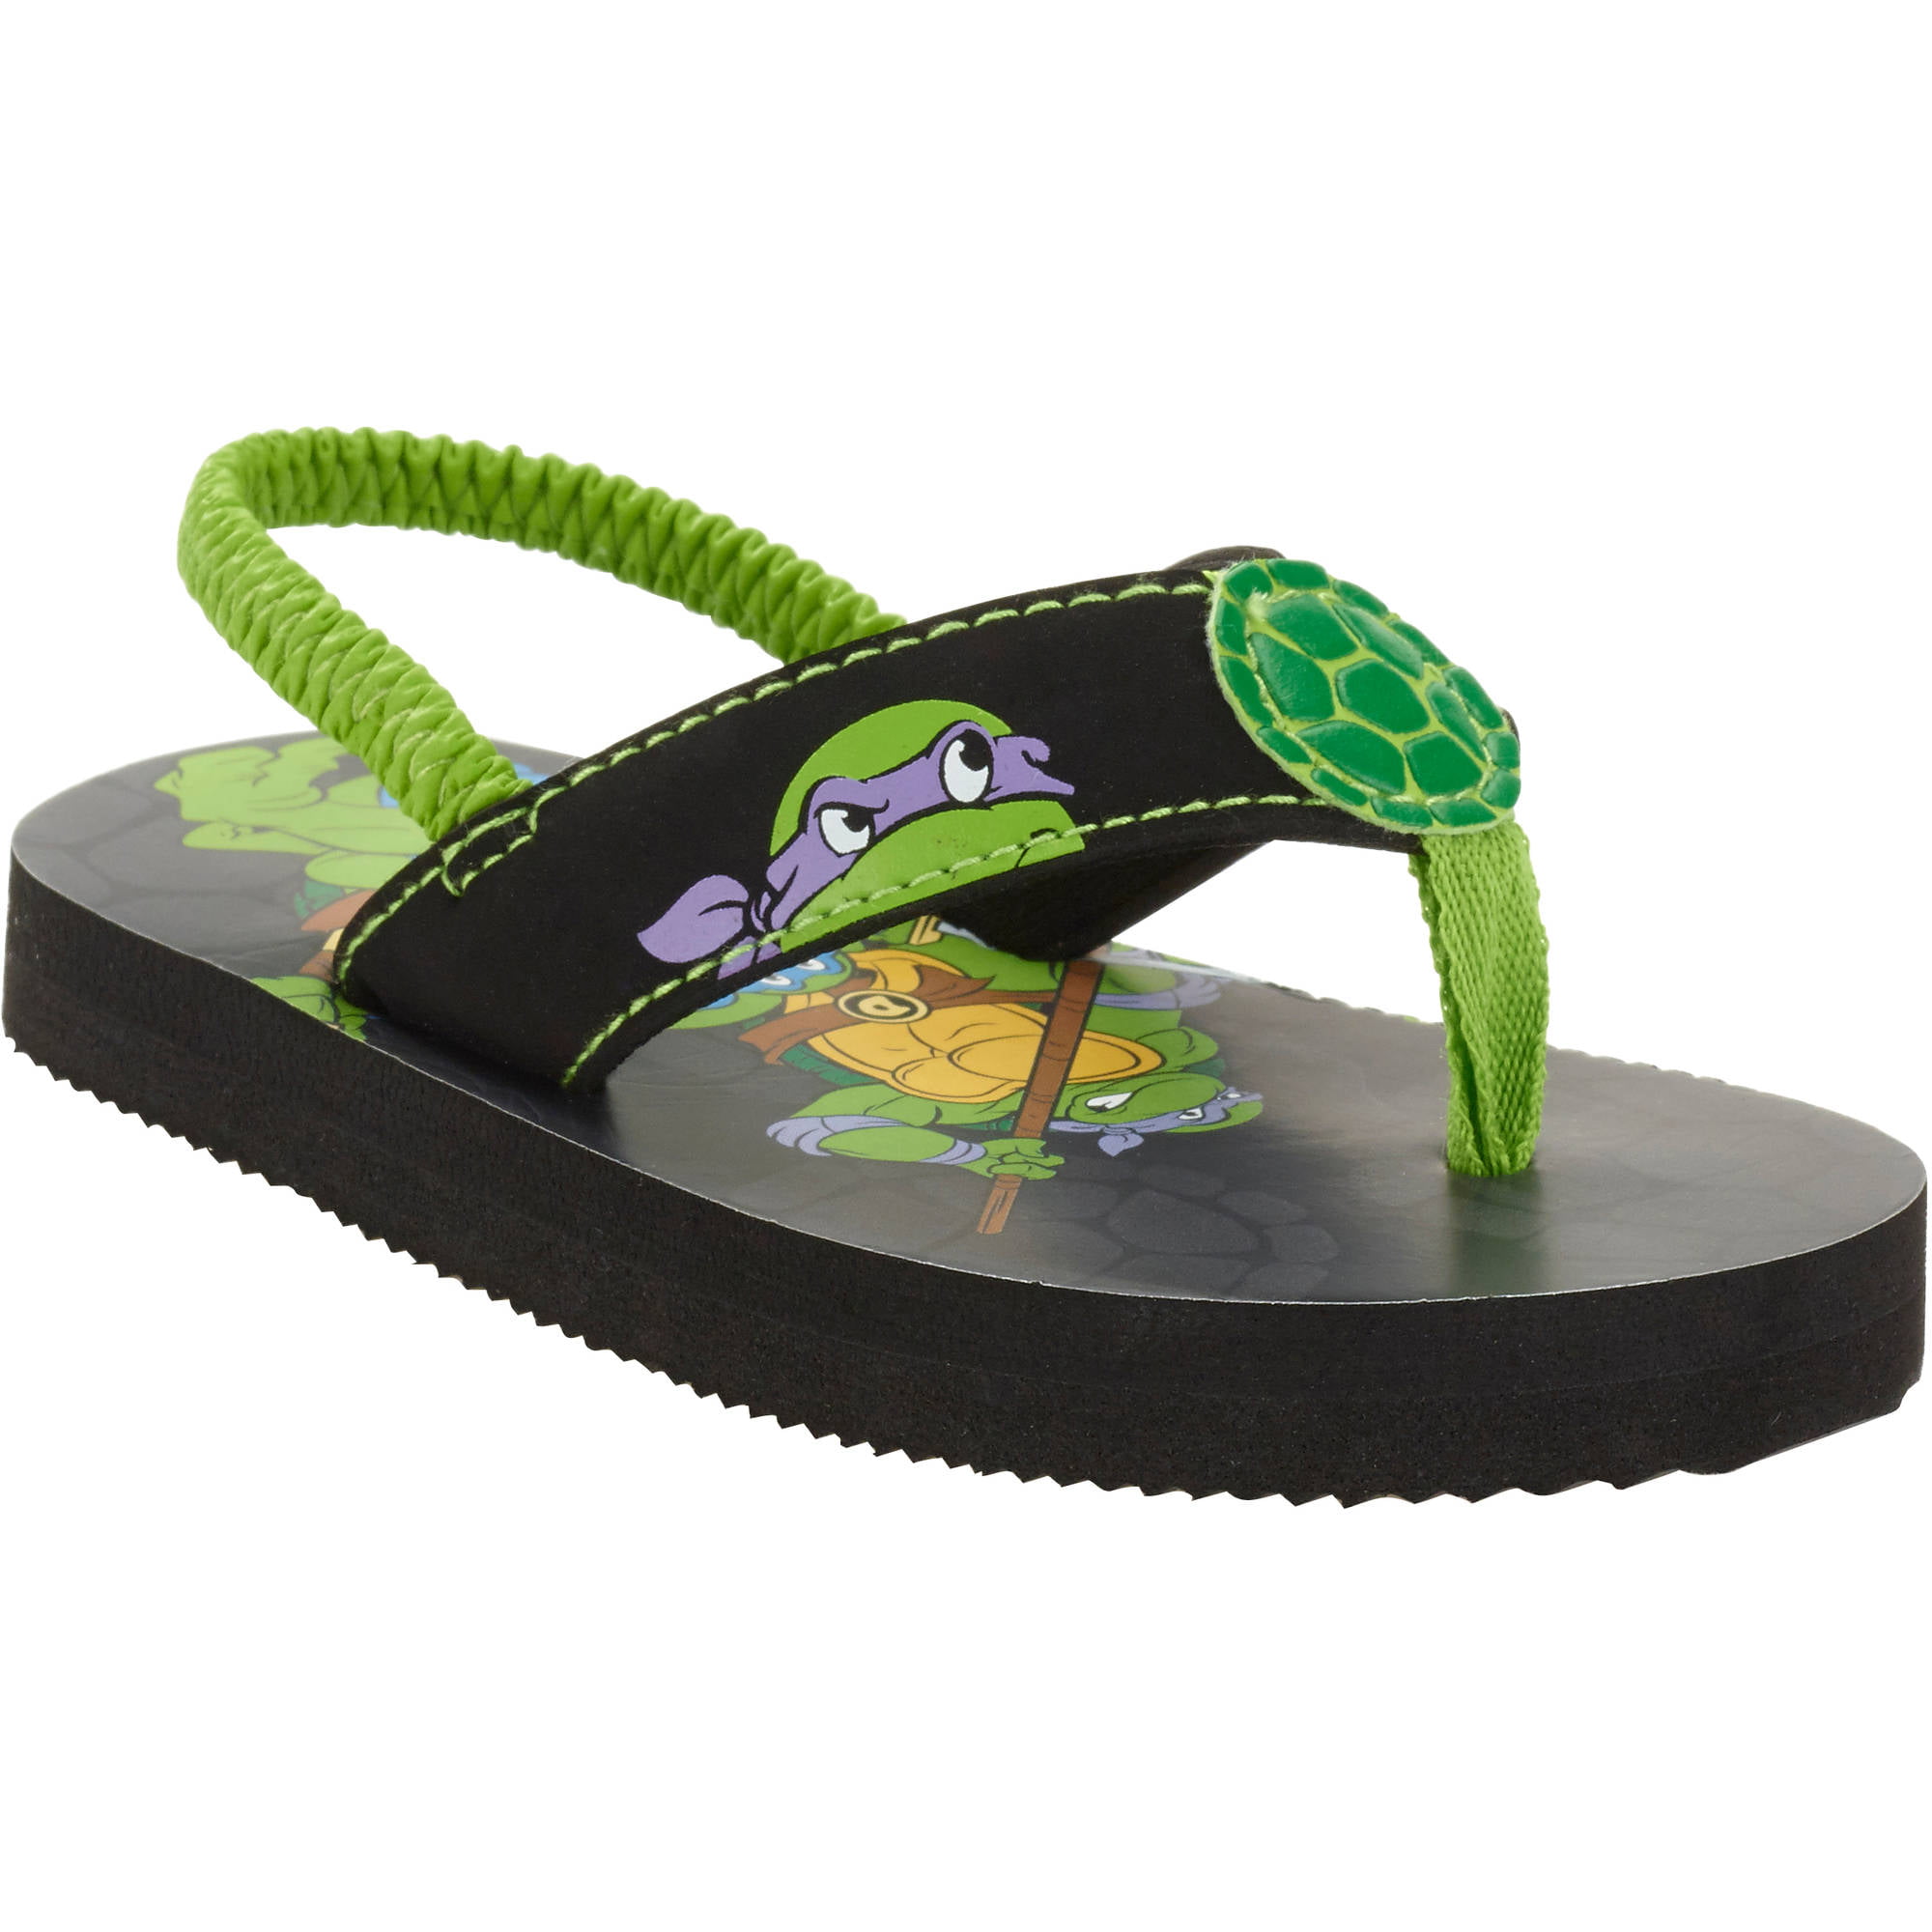 NEW Boys TMNT Medium 13-1 Clogs Ninja Turtles Water Shoes Sandals Slip On Pool 